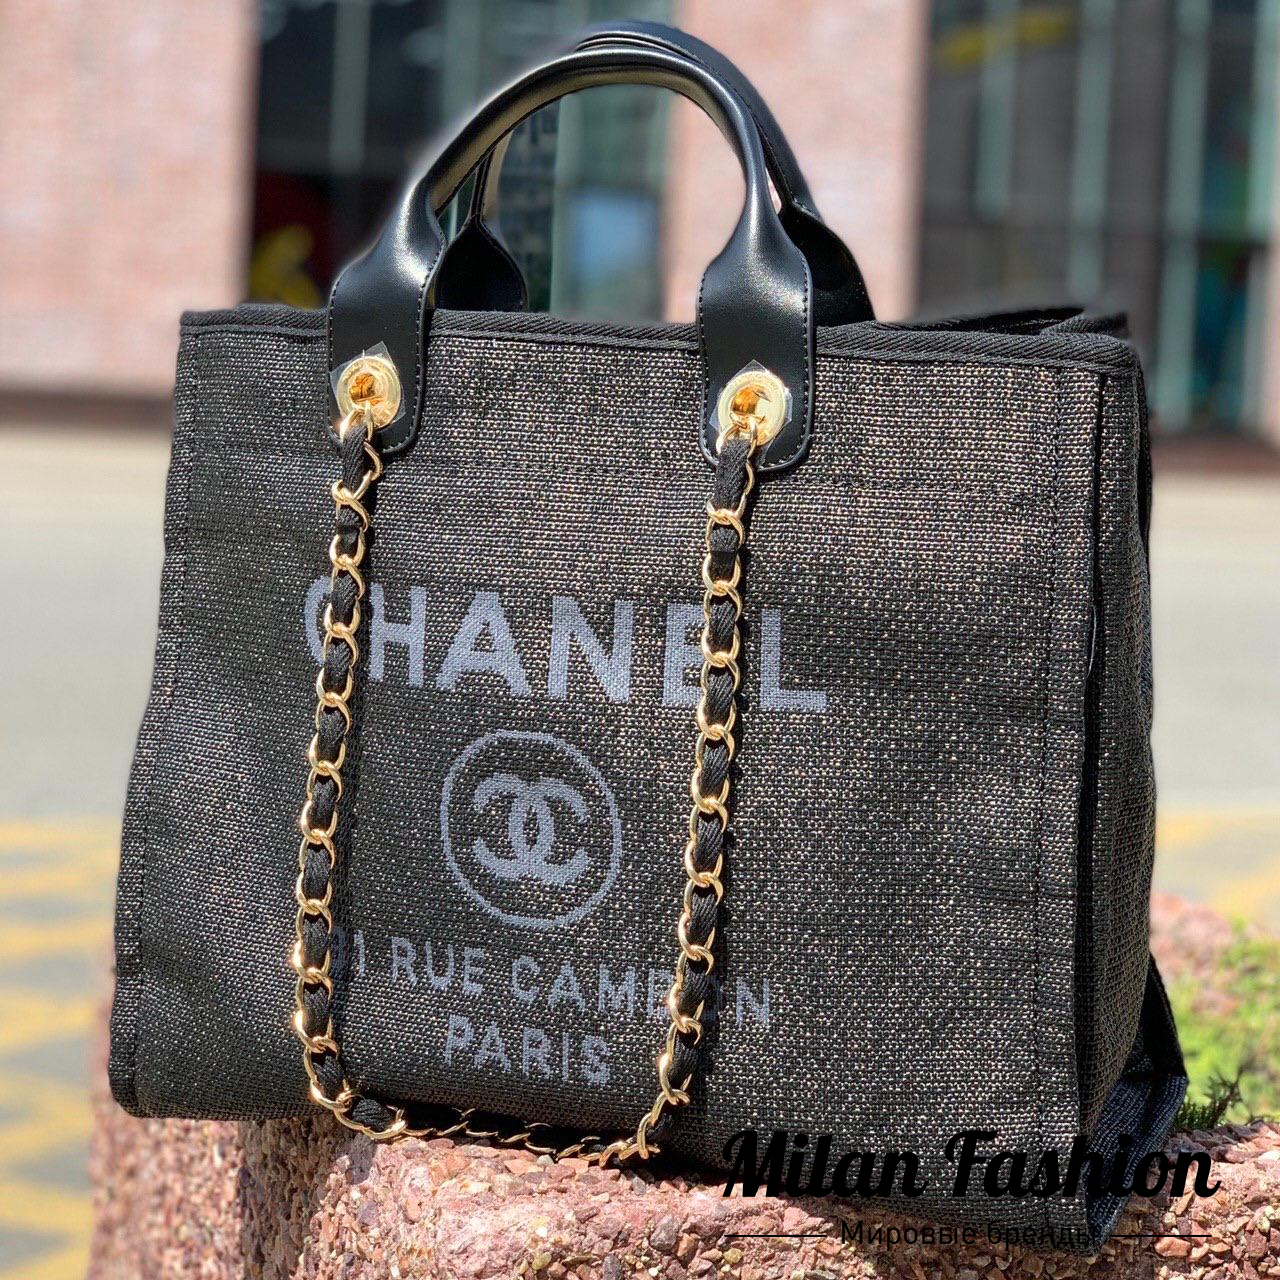 Женская кожаная сумка Chanel classic бежевая премиум люкс 301610 см   купить в Москве с доставкой по РФ